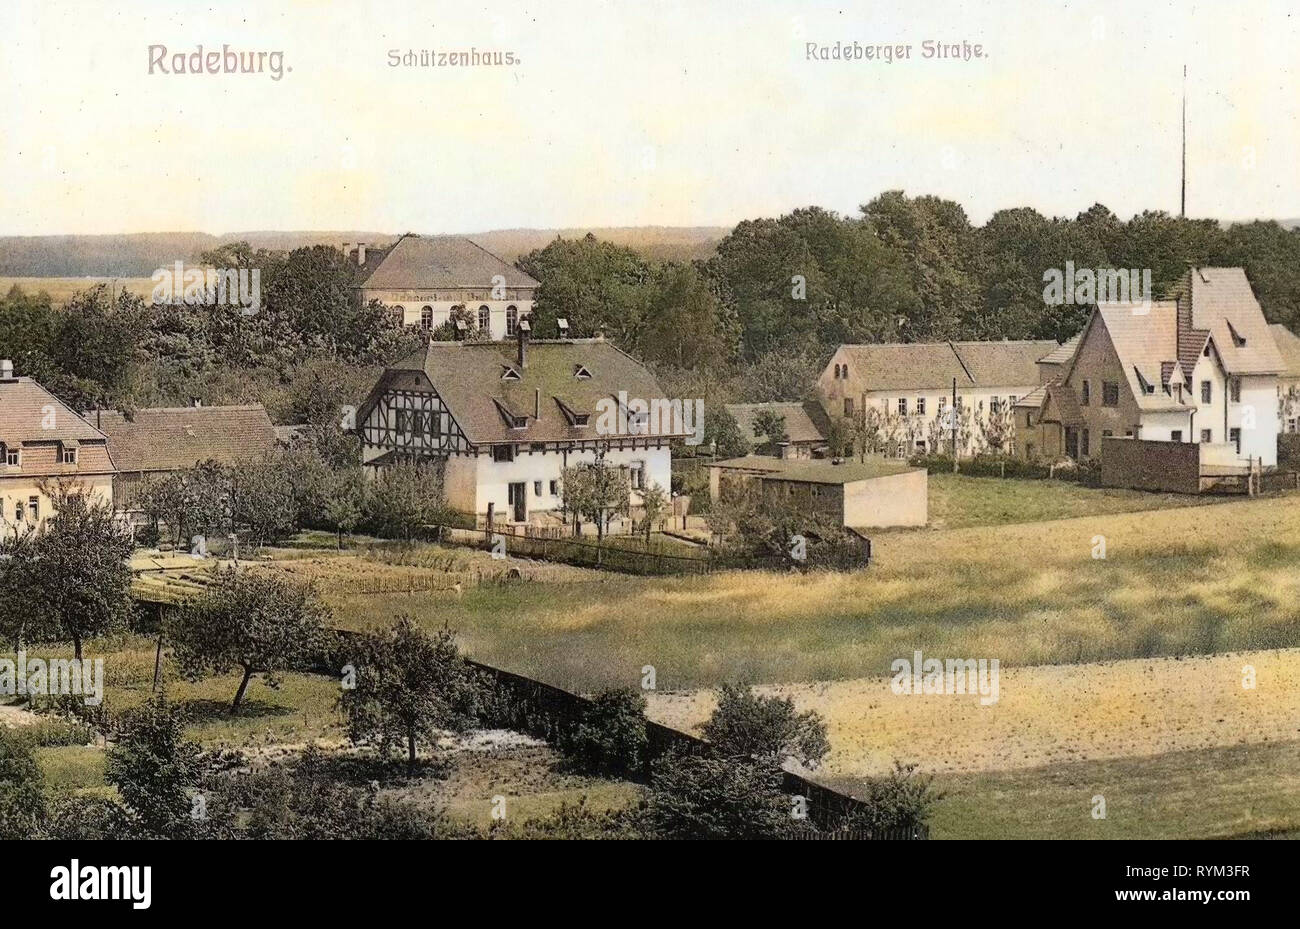 Schützenhaus, bâtiments en Radeburg, 1908, Landkreis Meißen, Radeburg, Allemagne Banque D'Images